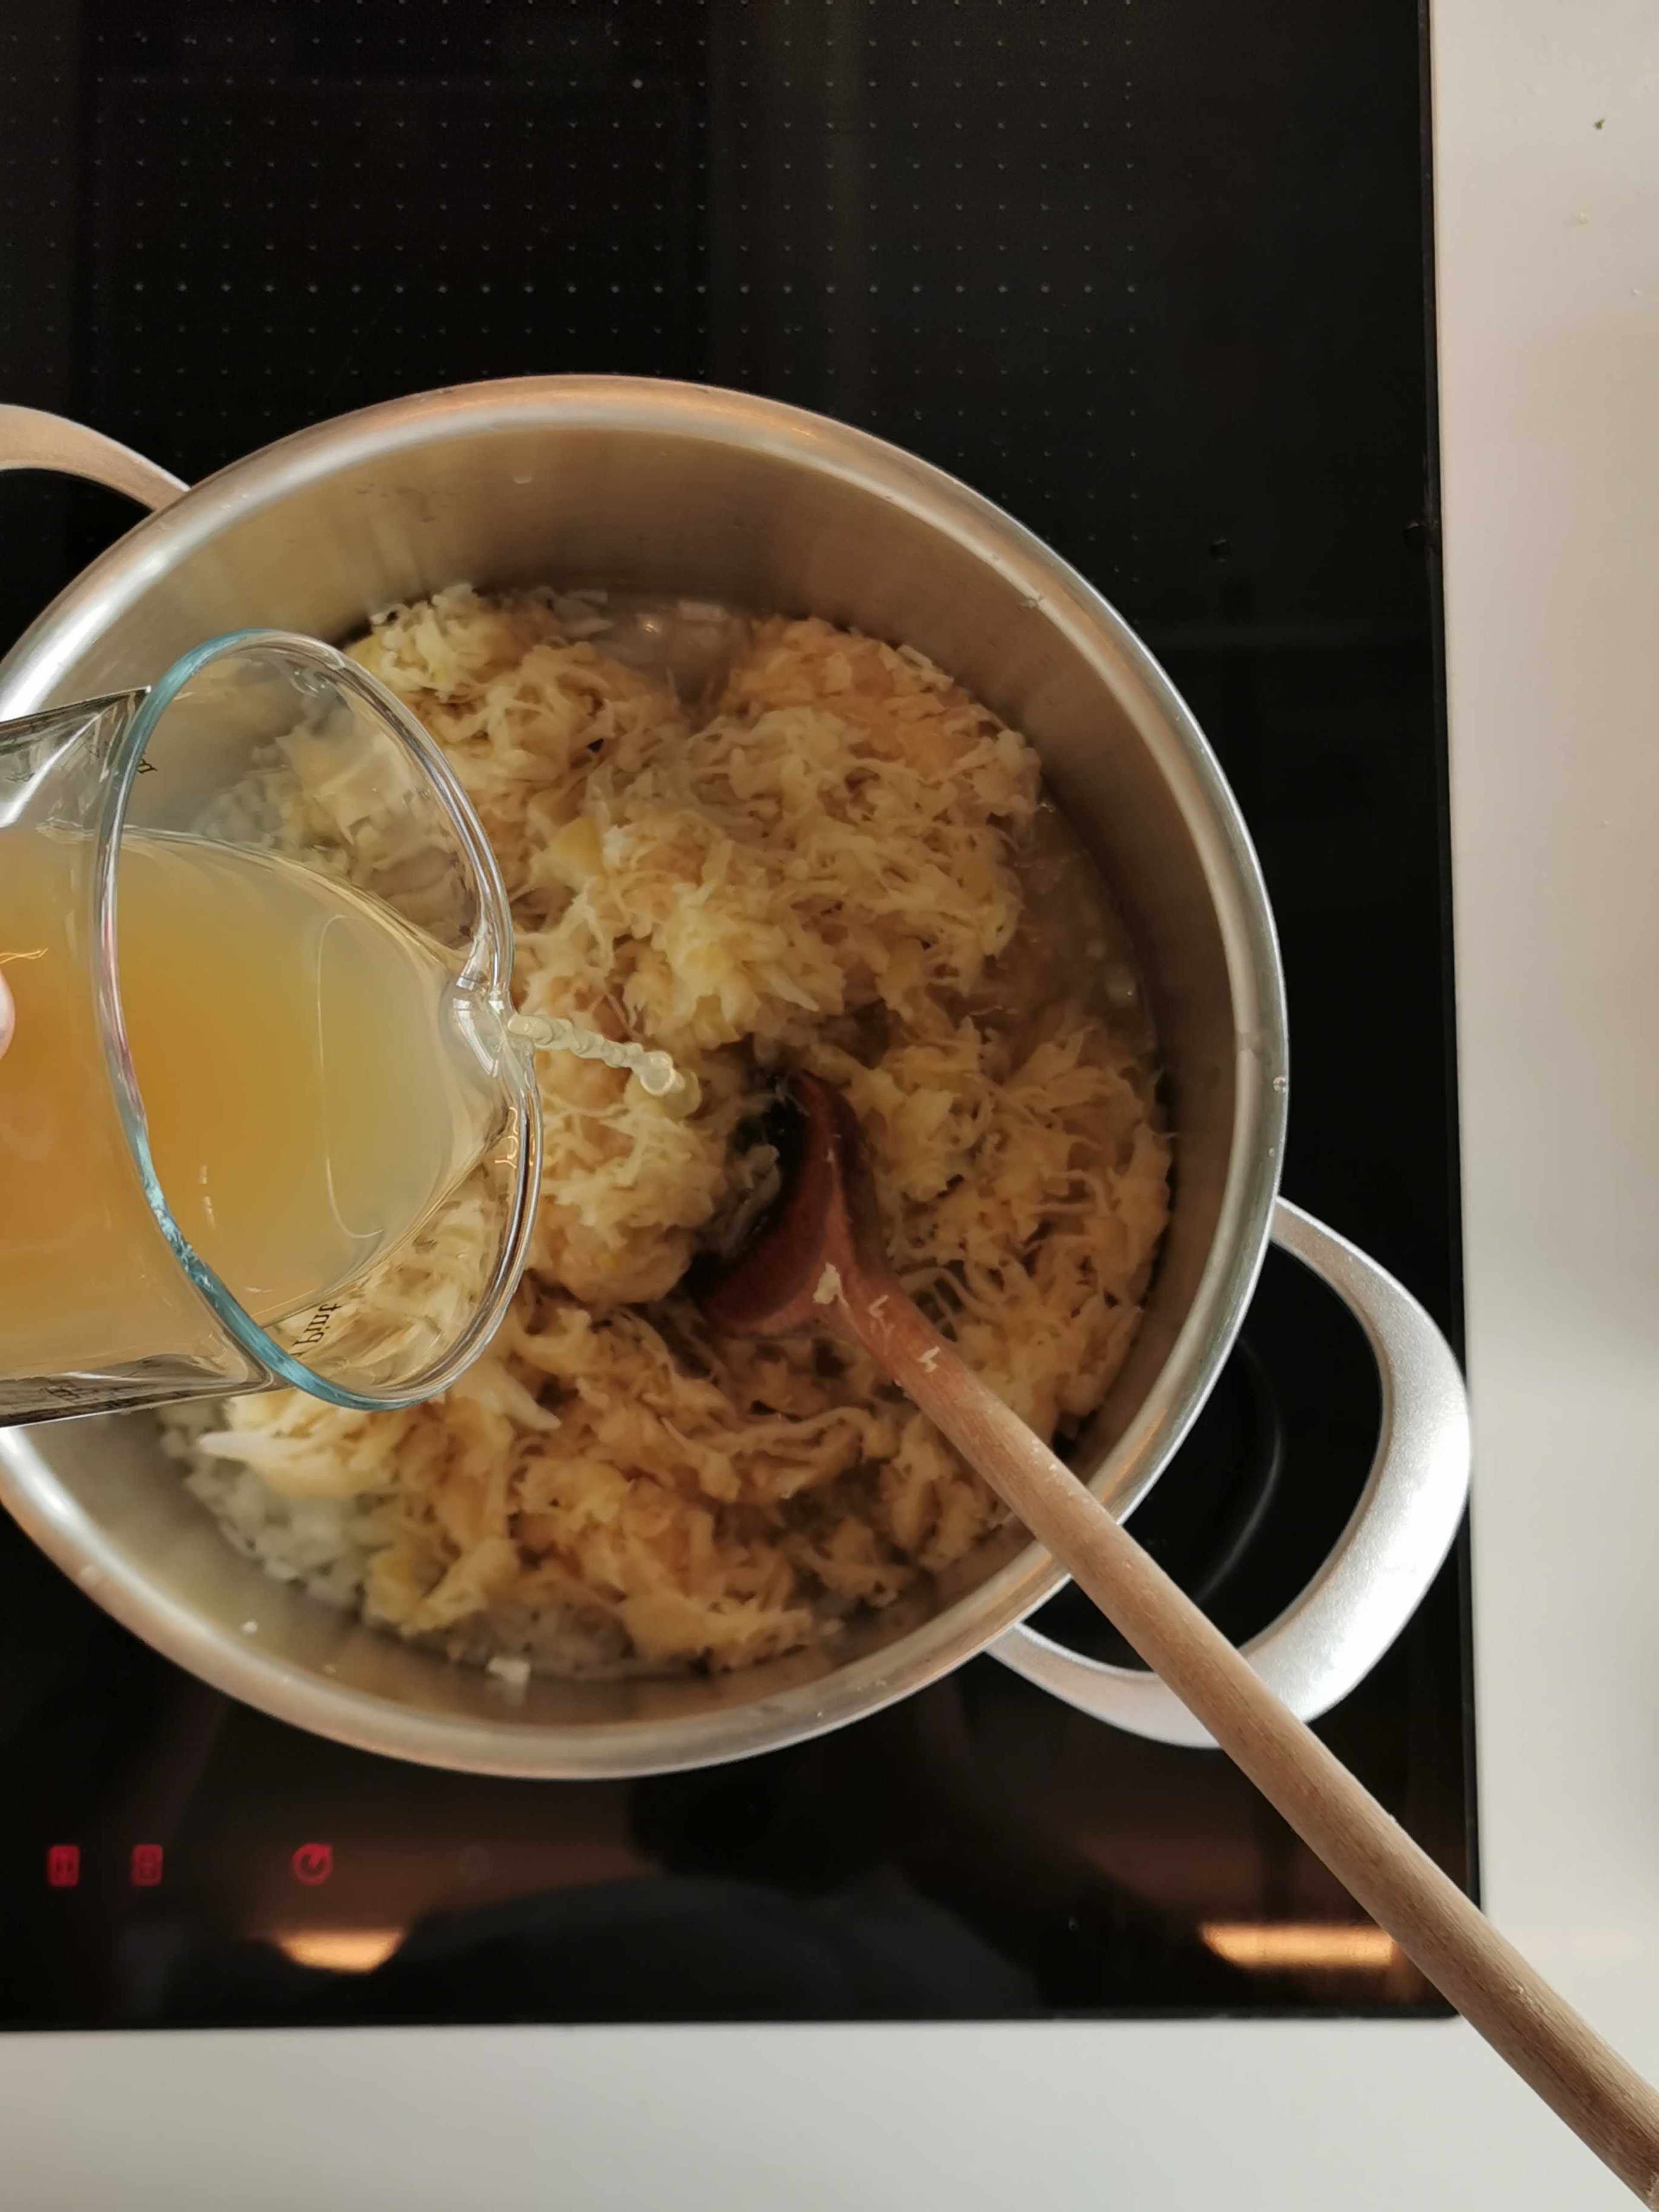 Restliche Zwiebel schälen und fein würfeln. Öl in einem Topf erhitzen, Zwiebel darin glasig dünsten. Sauerkraut und Kümmel zufügen, mit 250 ml der Eisbeinbrühe und Apfelsaft ablöschen. Ca. 30 Minuten garen.